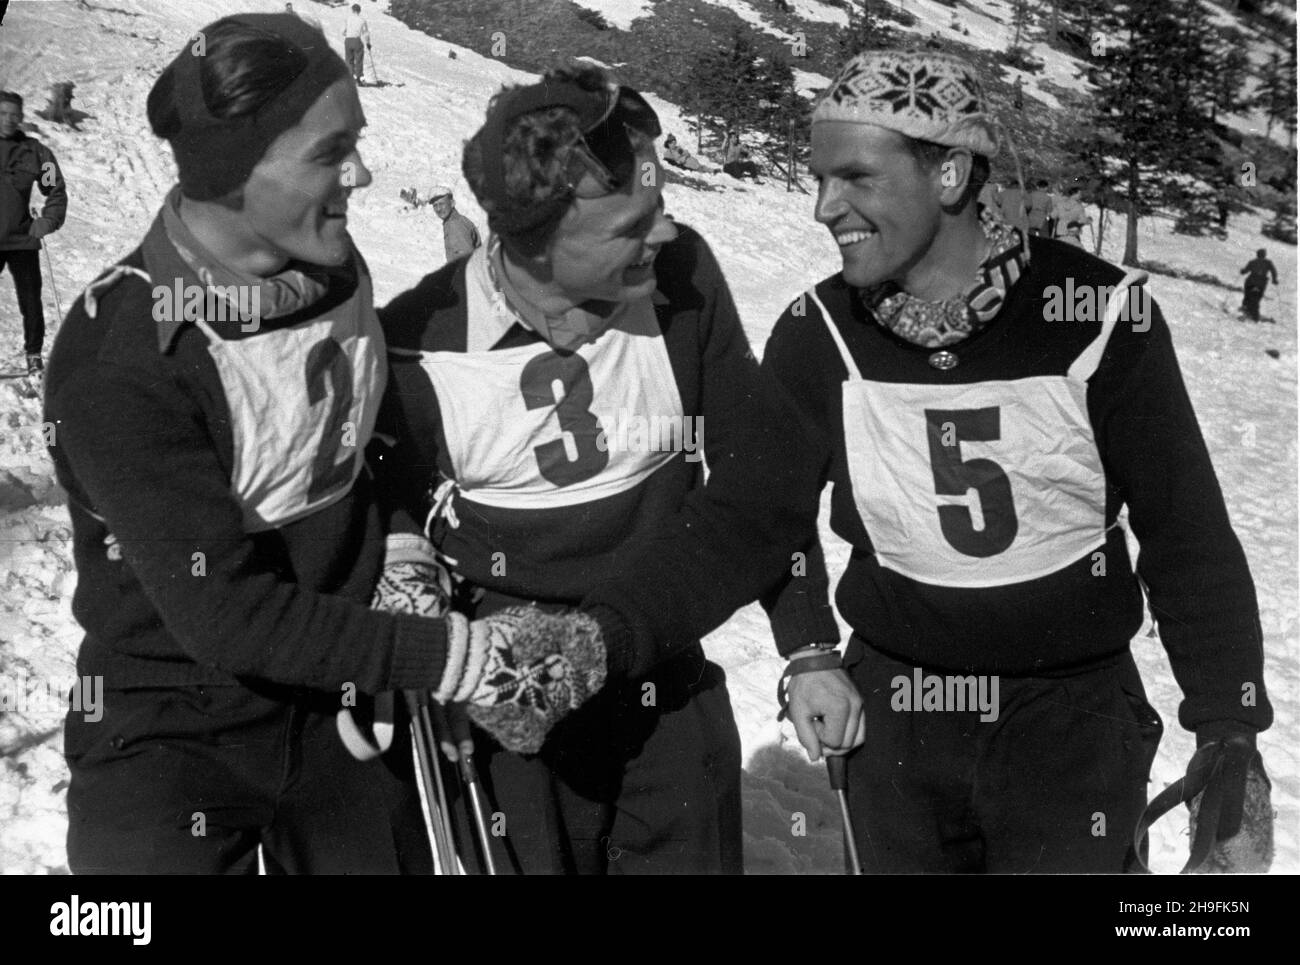 Karpacz, 1948-02-21. W dniach 19-23 lutego odbywa³y siê XXIII Mistrzostwa Narciarskie Polski. Slalom mê¿czyzn wygra³ Józef Marusarz (SNPTT Zakopane). Nz. zawodnicy slalomu na stoku. pw  PAP    Karpacz, Feb. 21, 1948. The 23rd Poland's Skiing Championship was held on February 19-23. Jozef Marusarz (SNPTT Zakopane) won men's slalom. Pictured: slalom   contenders on a slope.  pw  PAP Stock Photo